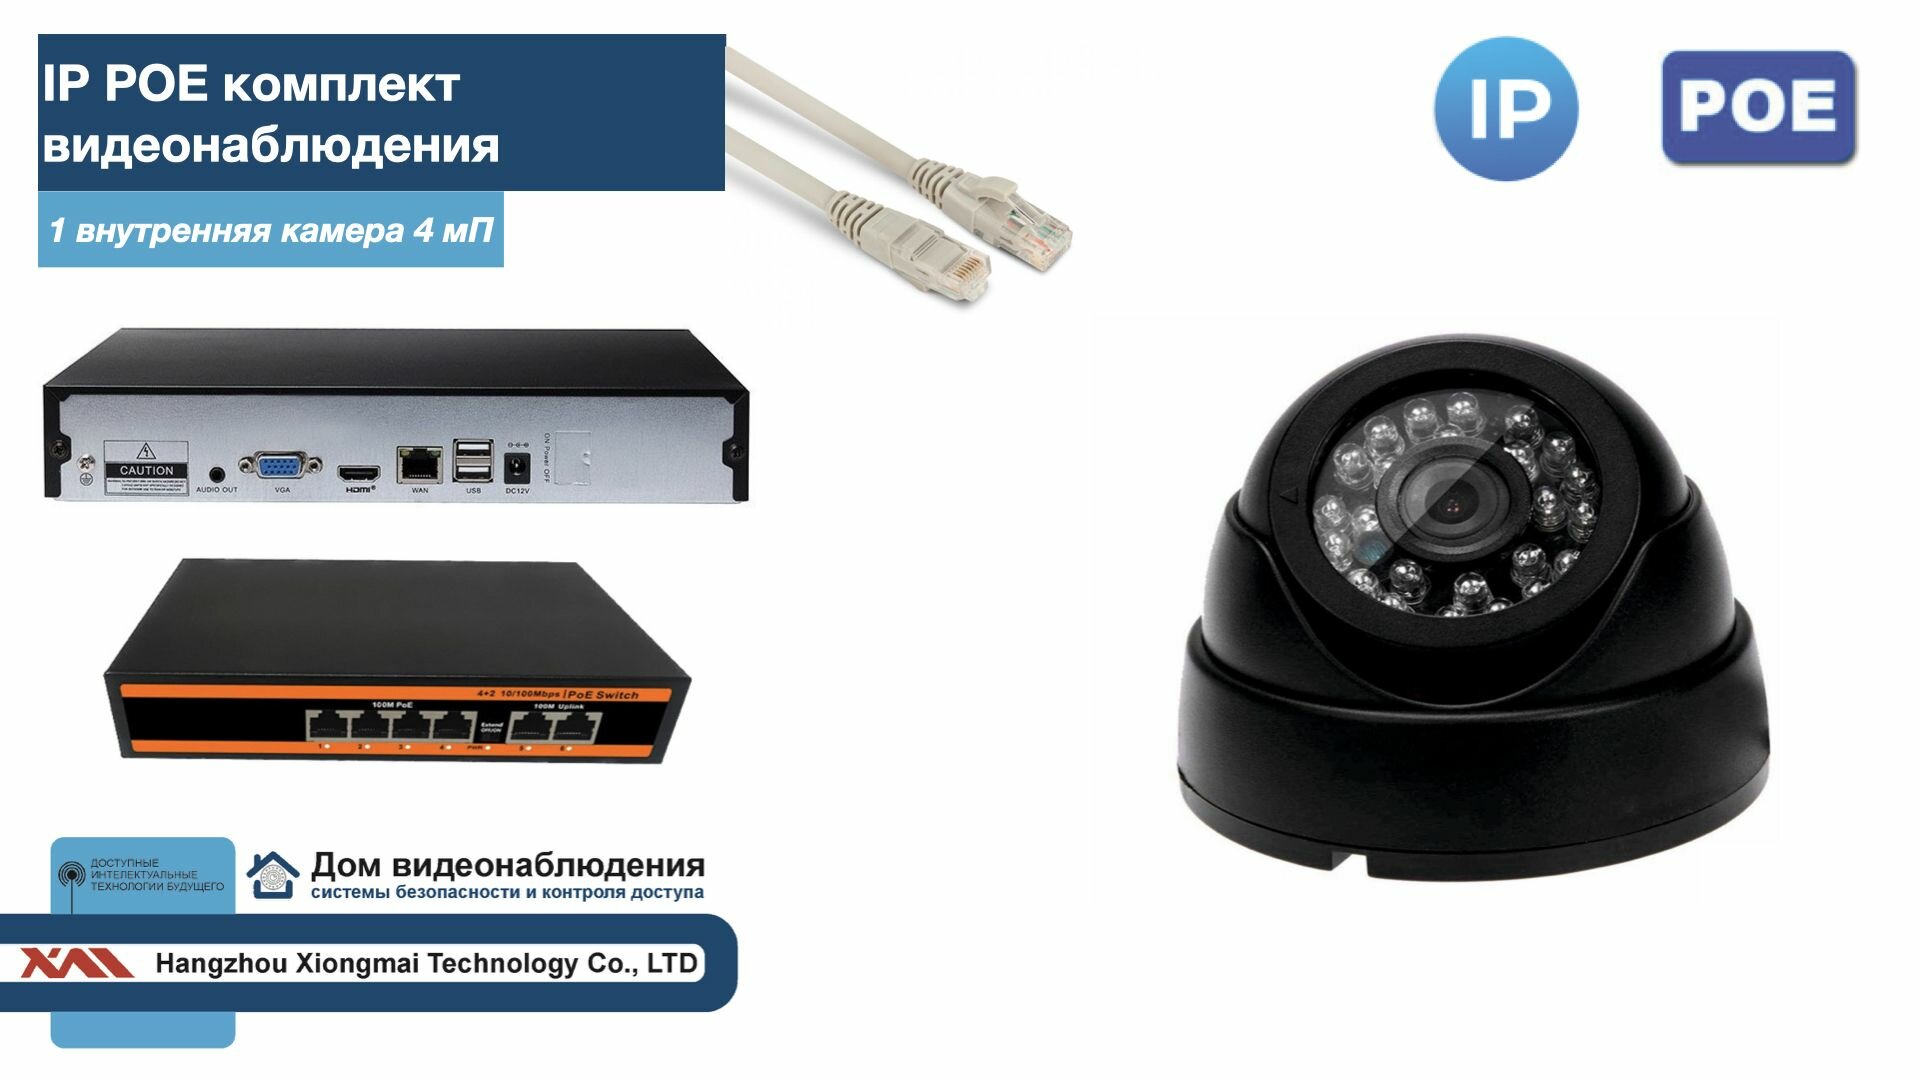 Полный IP POE комплект видеонаблюдения на 1 камеру (KIT1IPPOE300B4MP)